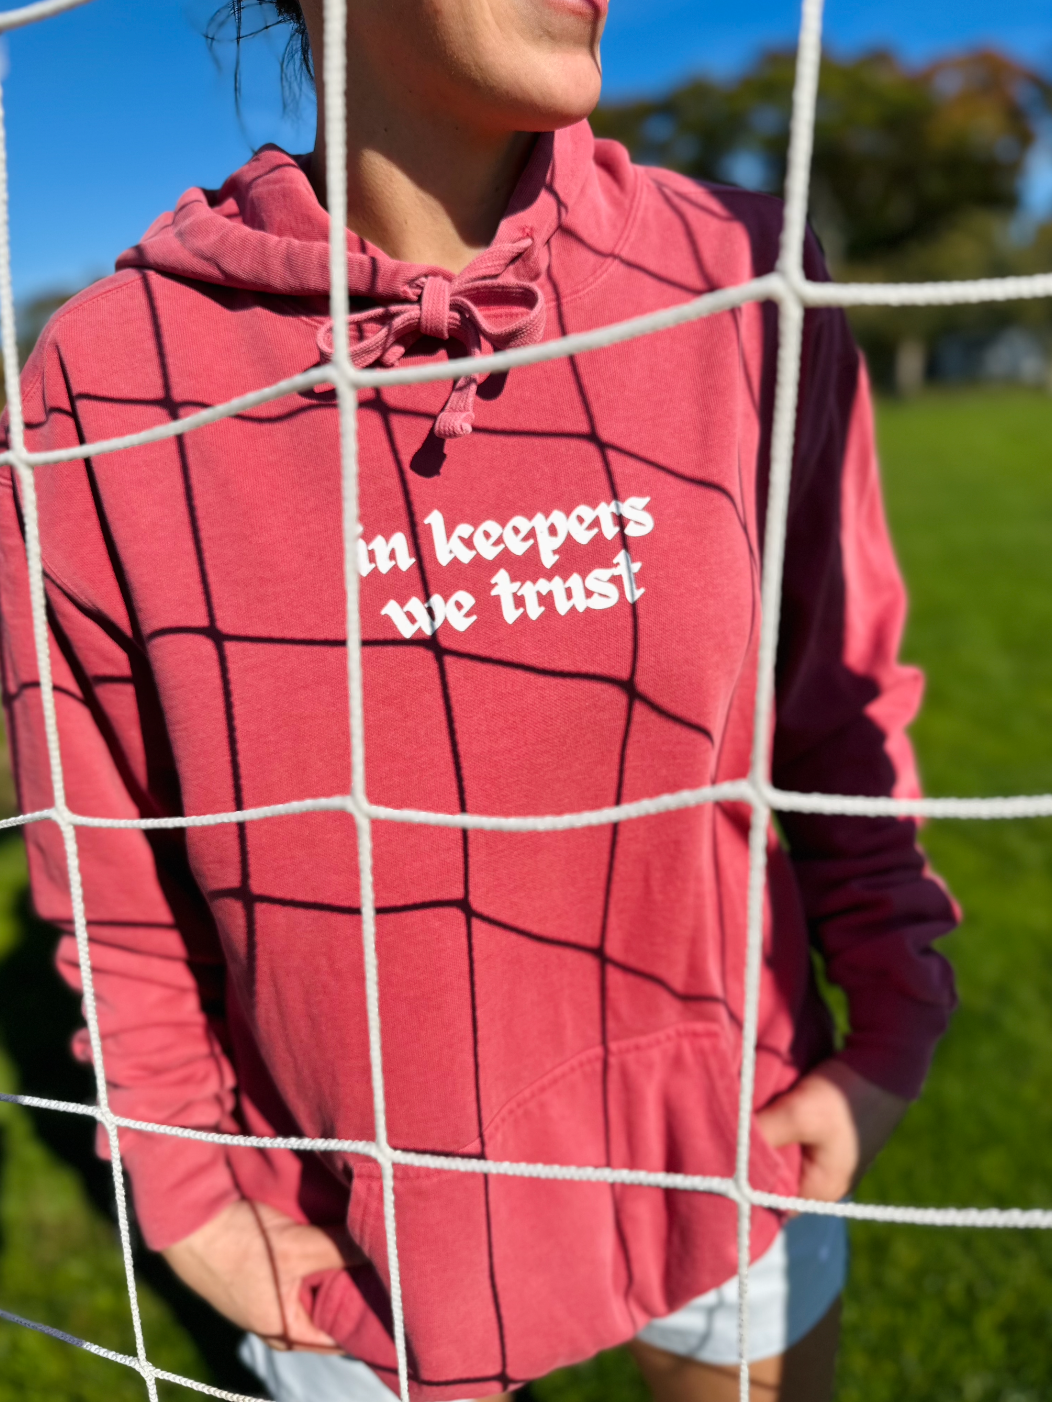 In Keepers We Trust Adult Hooded Sweatshirt